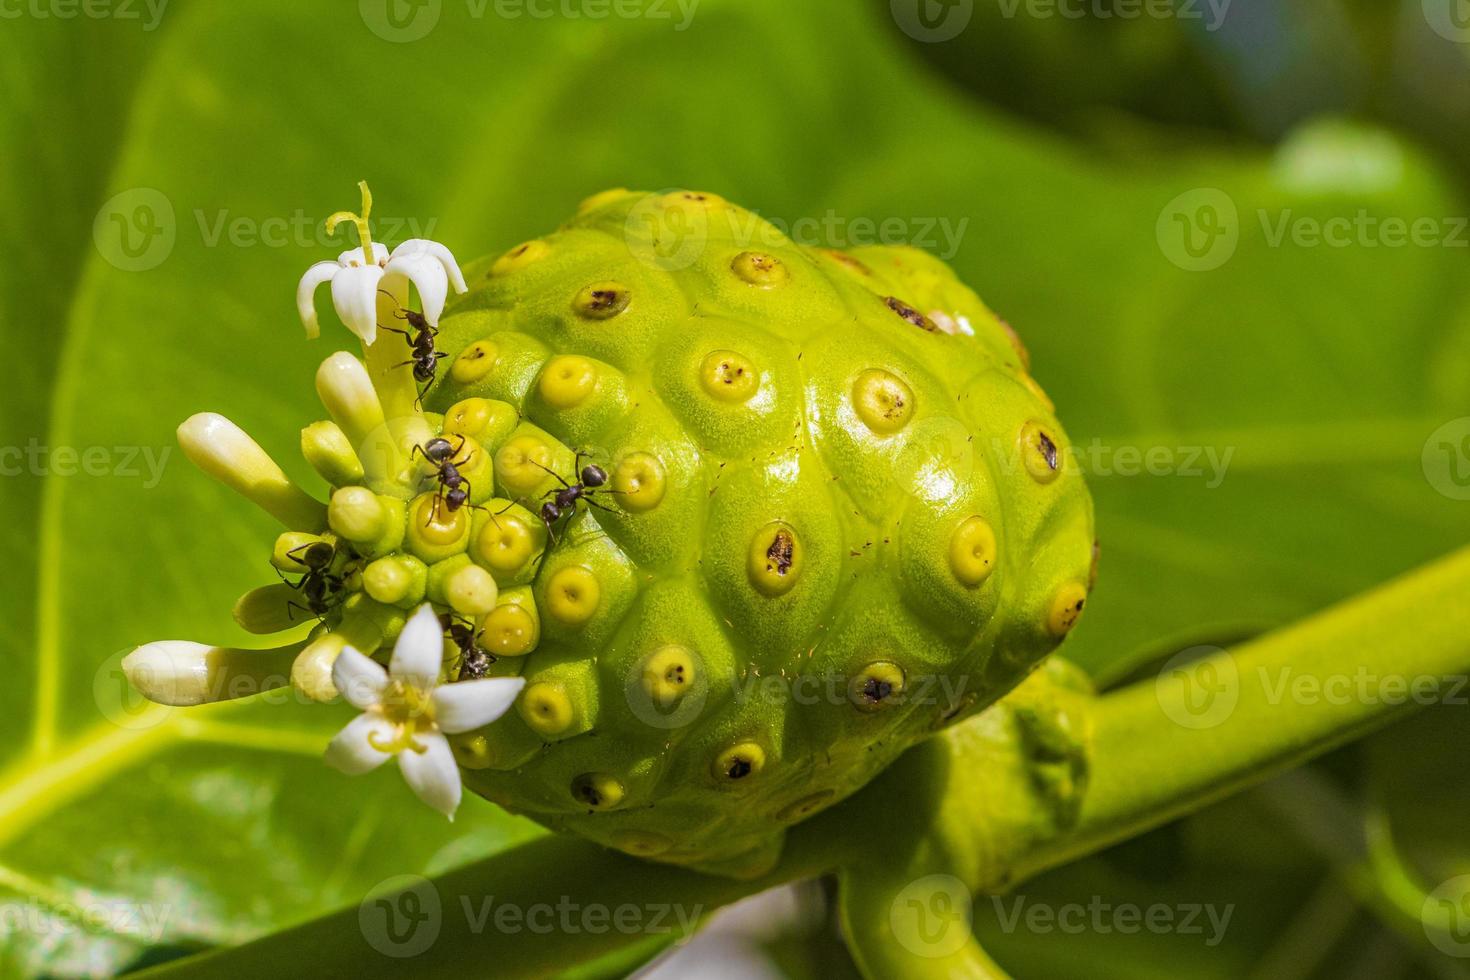 fruit de noni morinda citrifolia avec des fleurs populaires auprès des fourmis du Mexique. photo